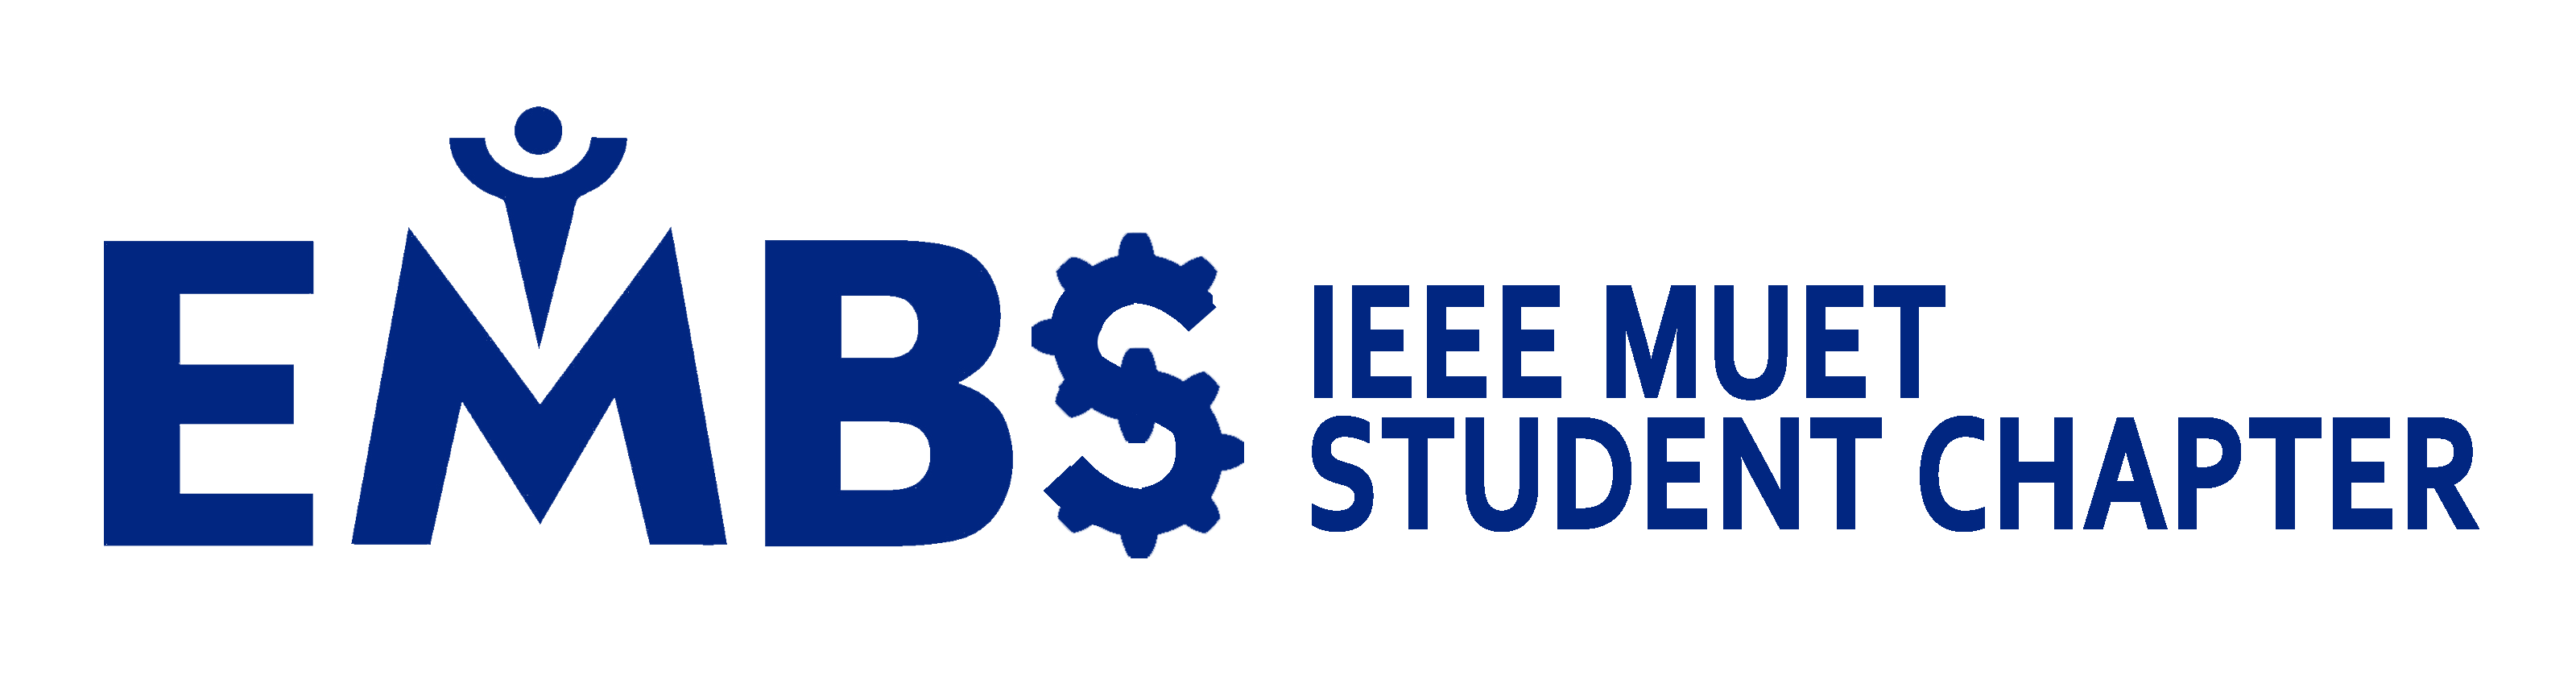 IEEE EMBS MUET Student Chapter